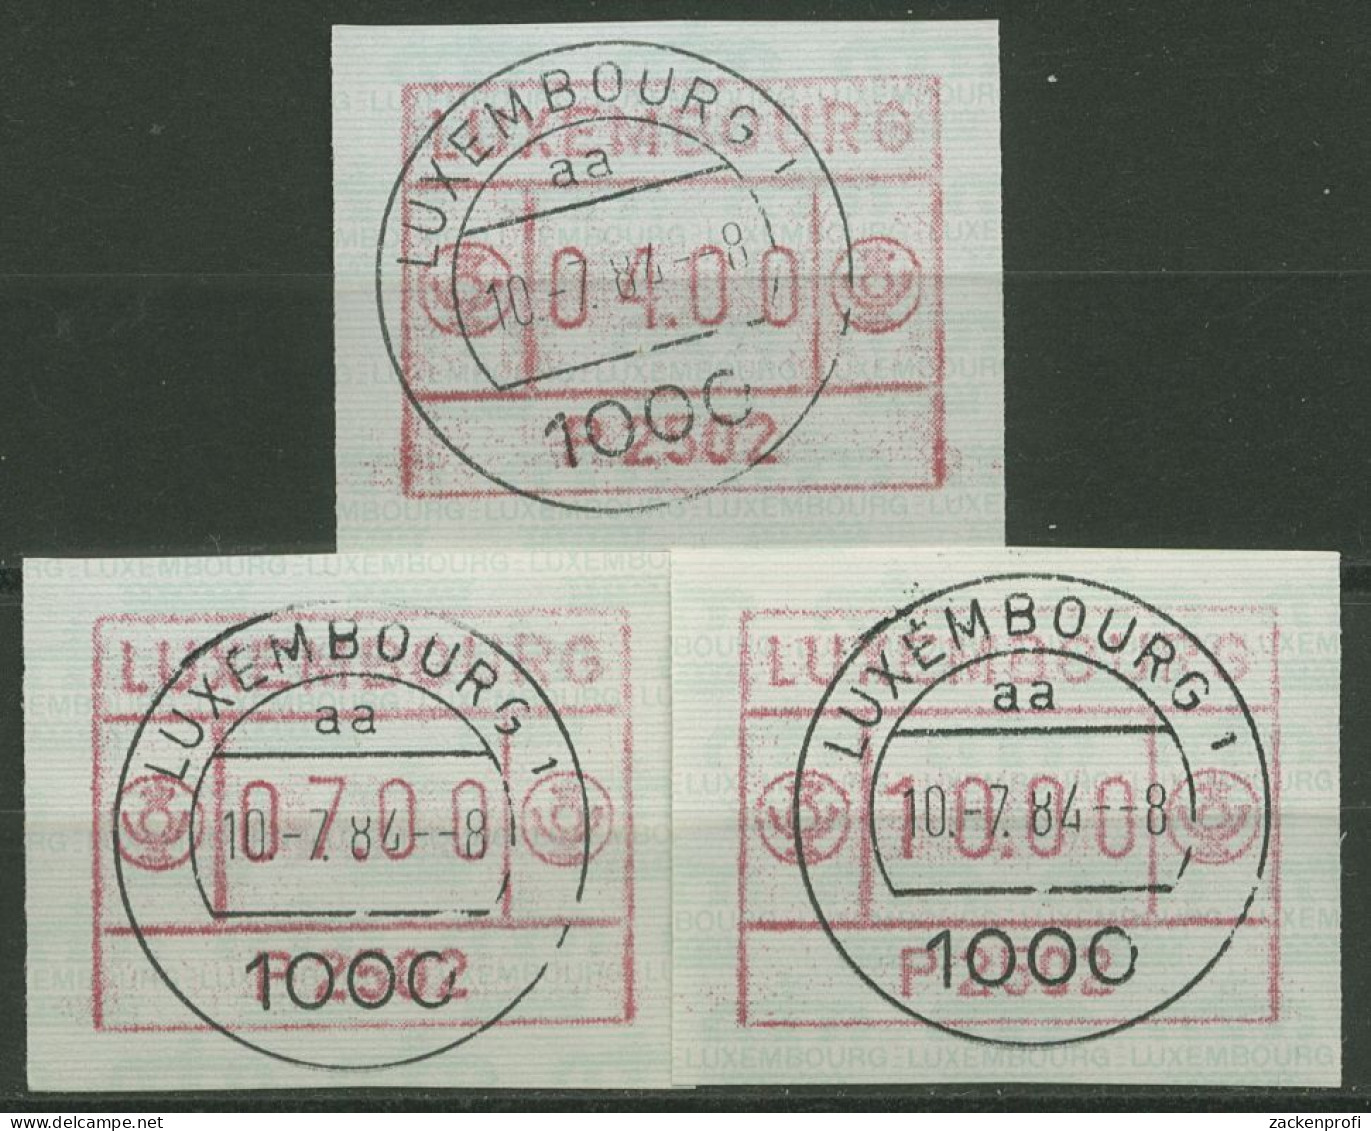 Luxemburg 1983 Automatenmarke Automat P 2502 Satz 1.2.1 B S1 Gestempelt - Vignettes D'affranchissement